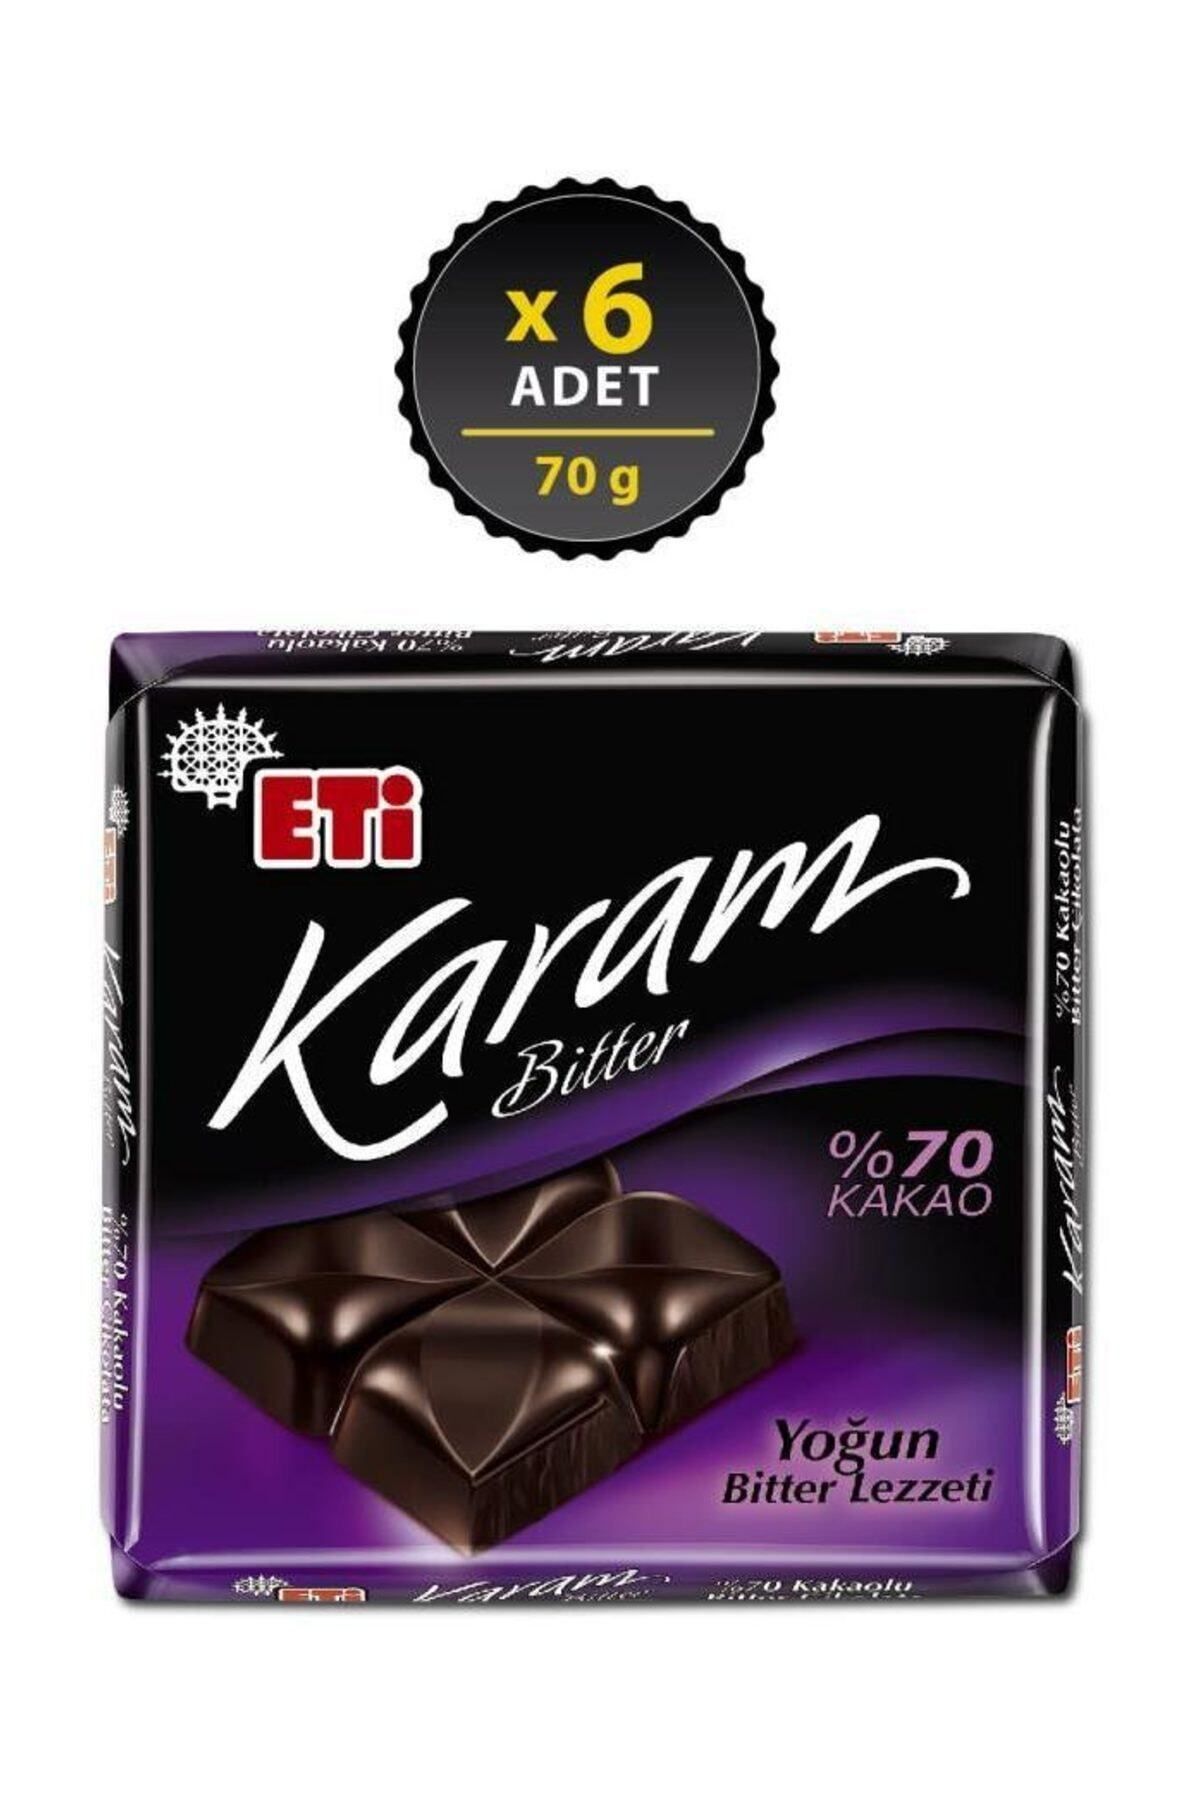 Eti Karam %70 Kakaolu Bitter Çikolata 70 g x 6 Adet